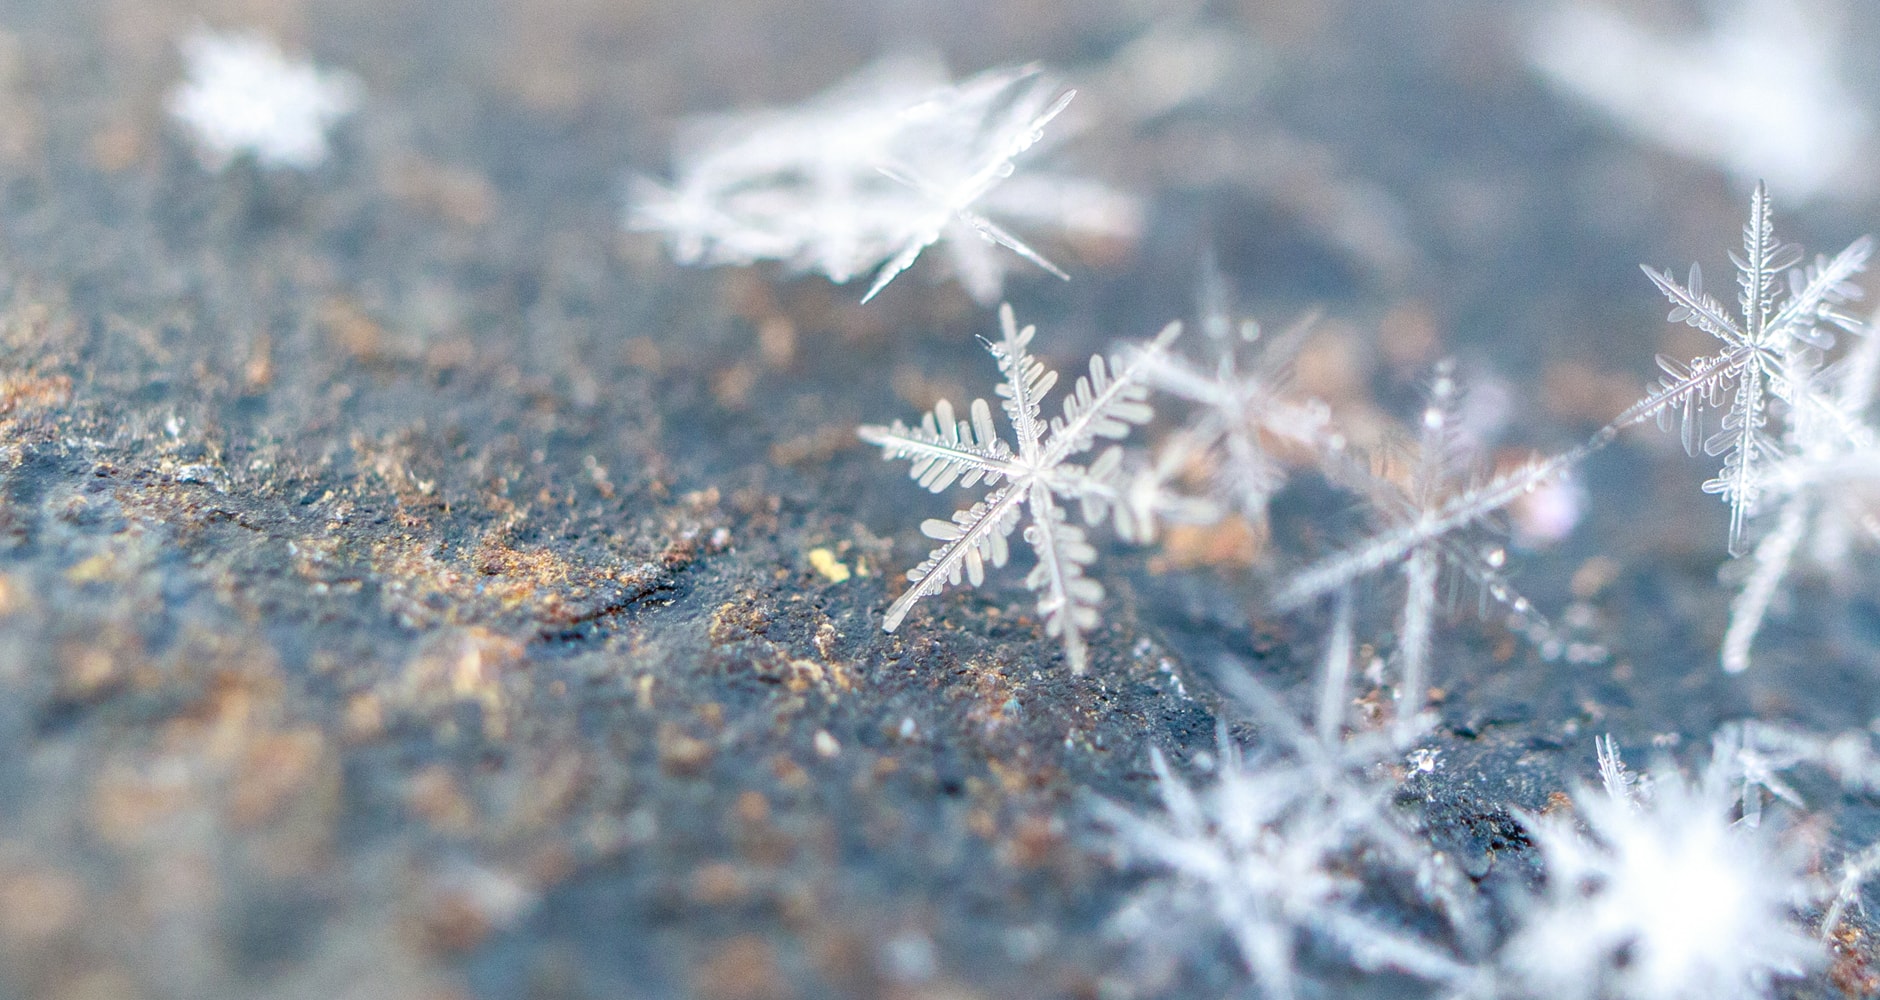 Snowflakes fallen on the ground